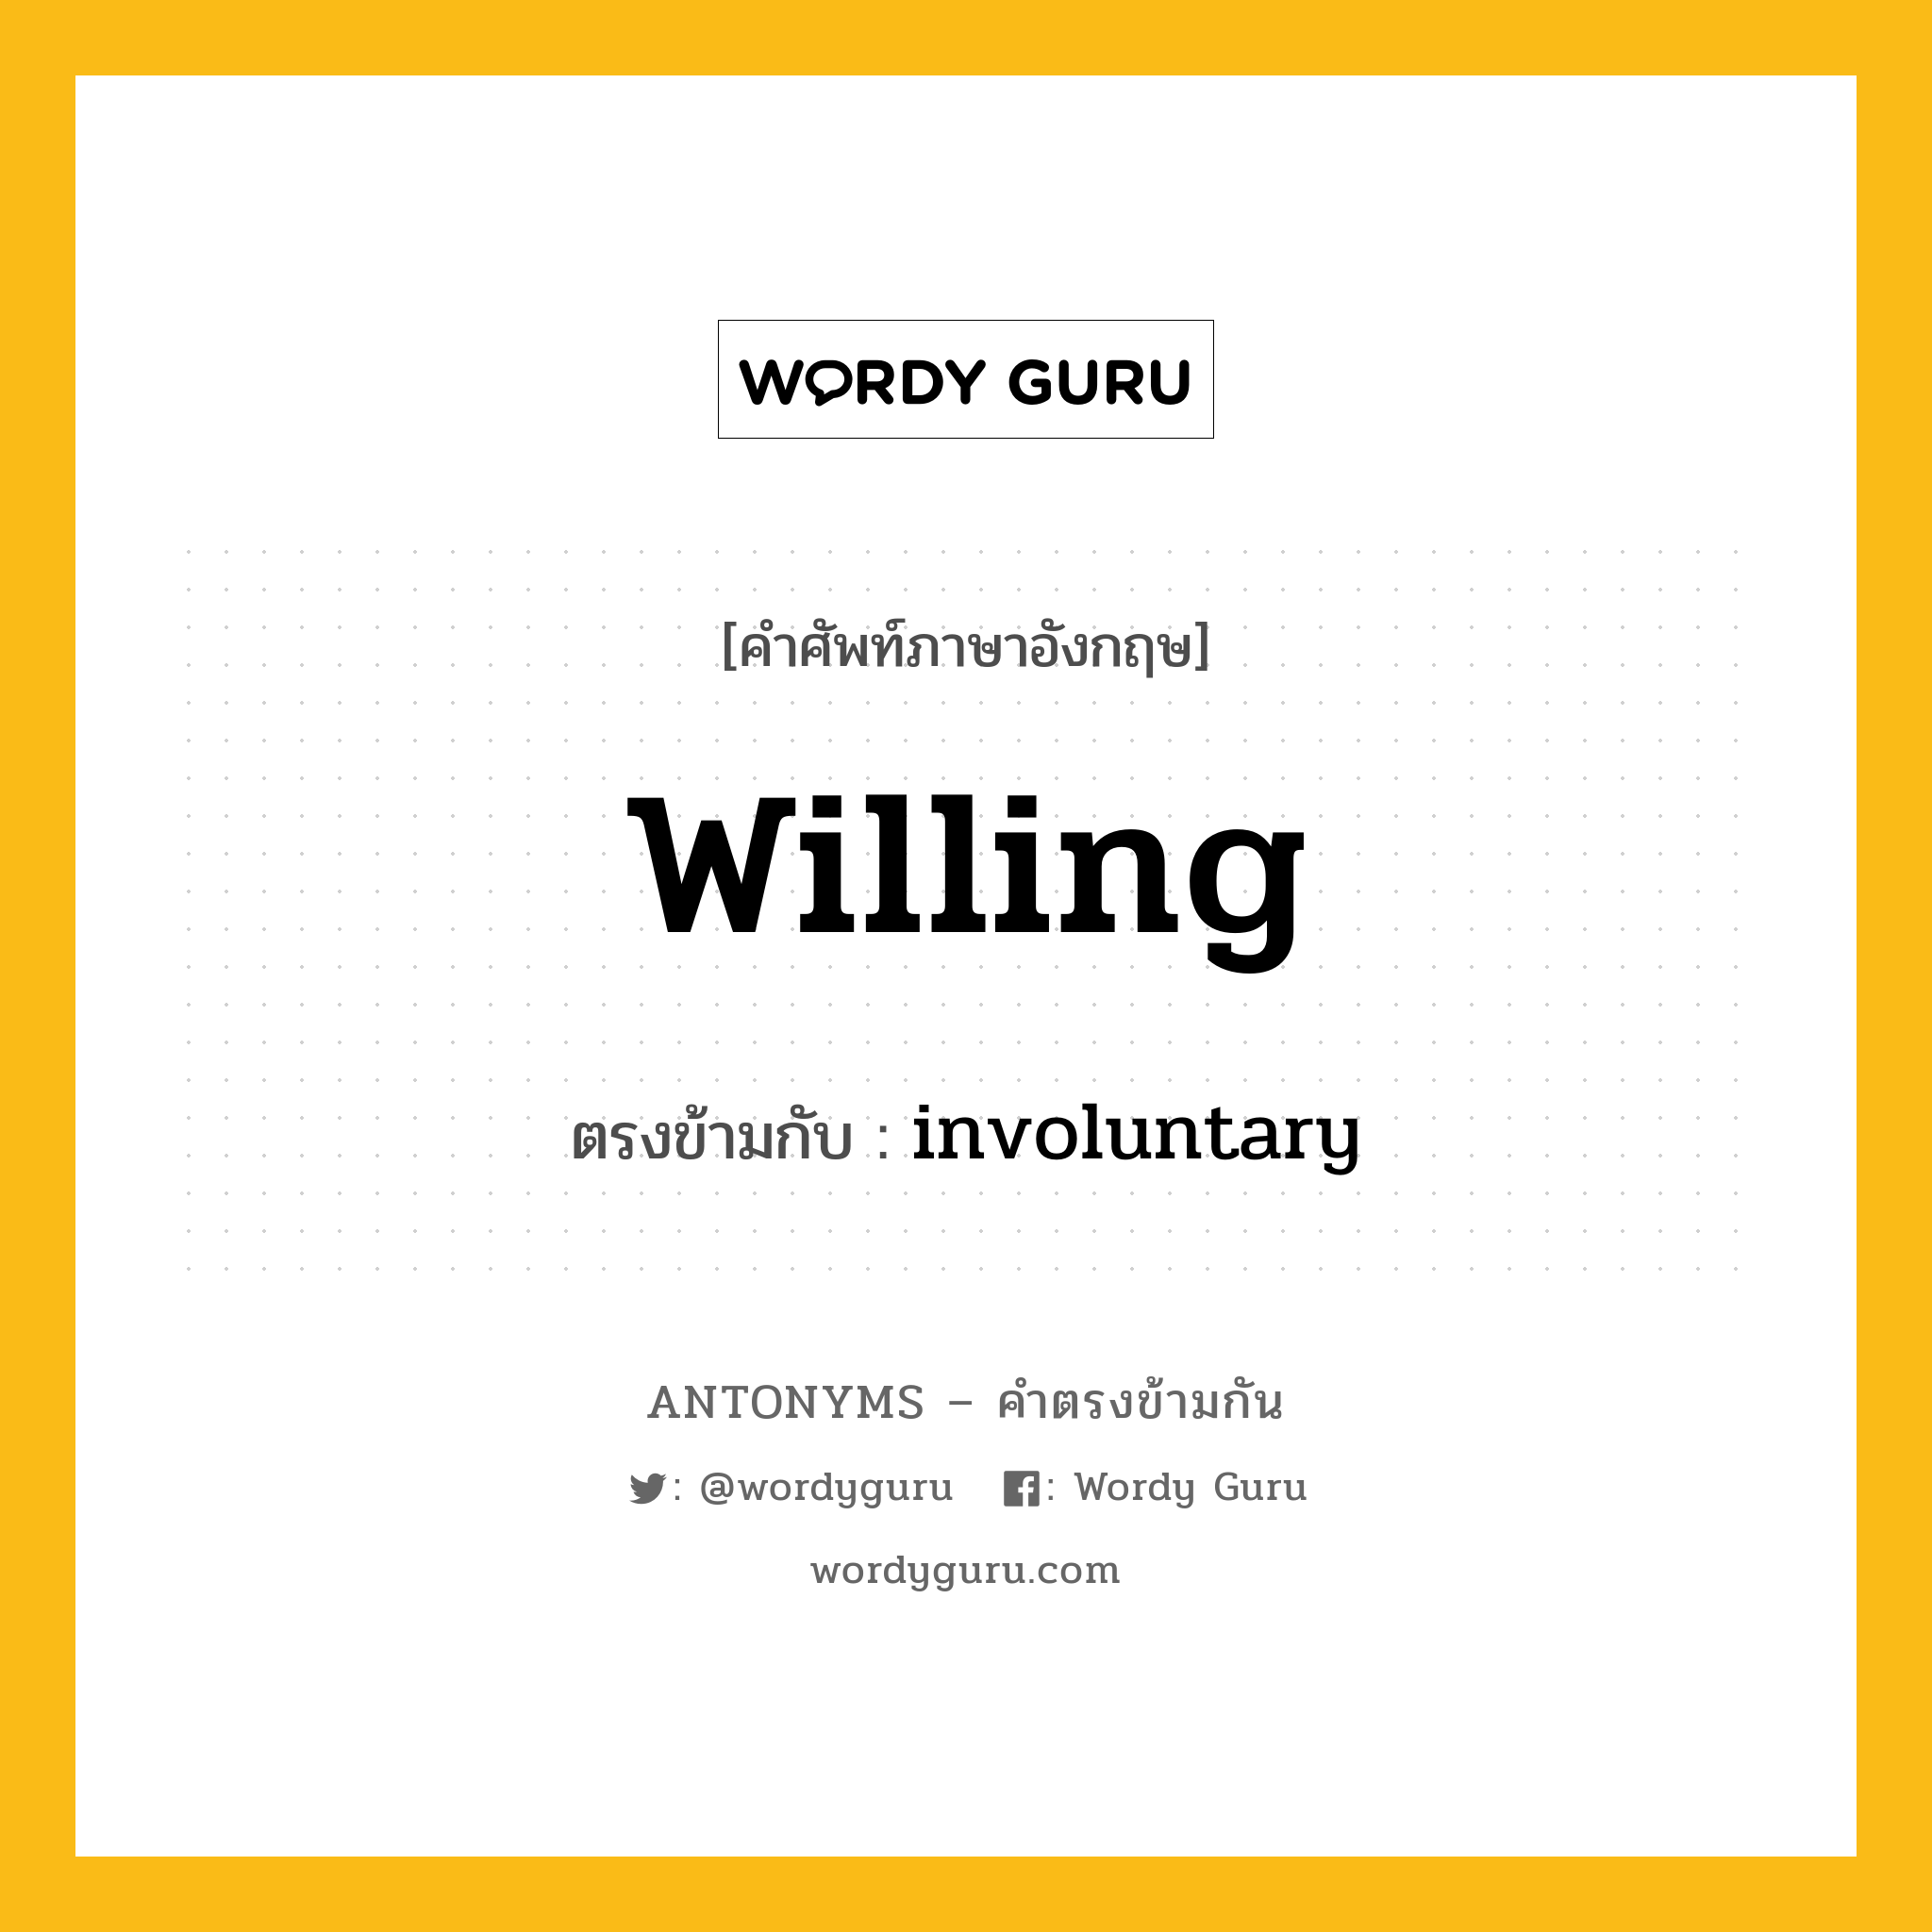 willing เป็นคำตรงข้ามกับคำไหนบ้าง?, คำศัพท์ภาษาอังกฤษ willing ตรงข้ามกับ involuntary หมวด involuntary